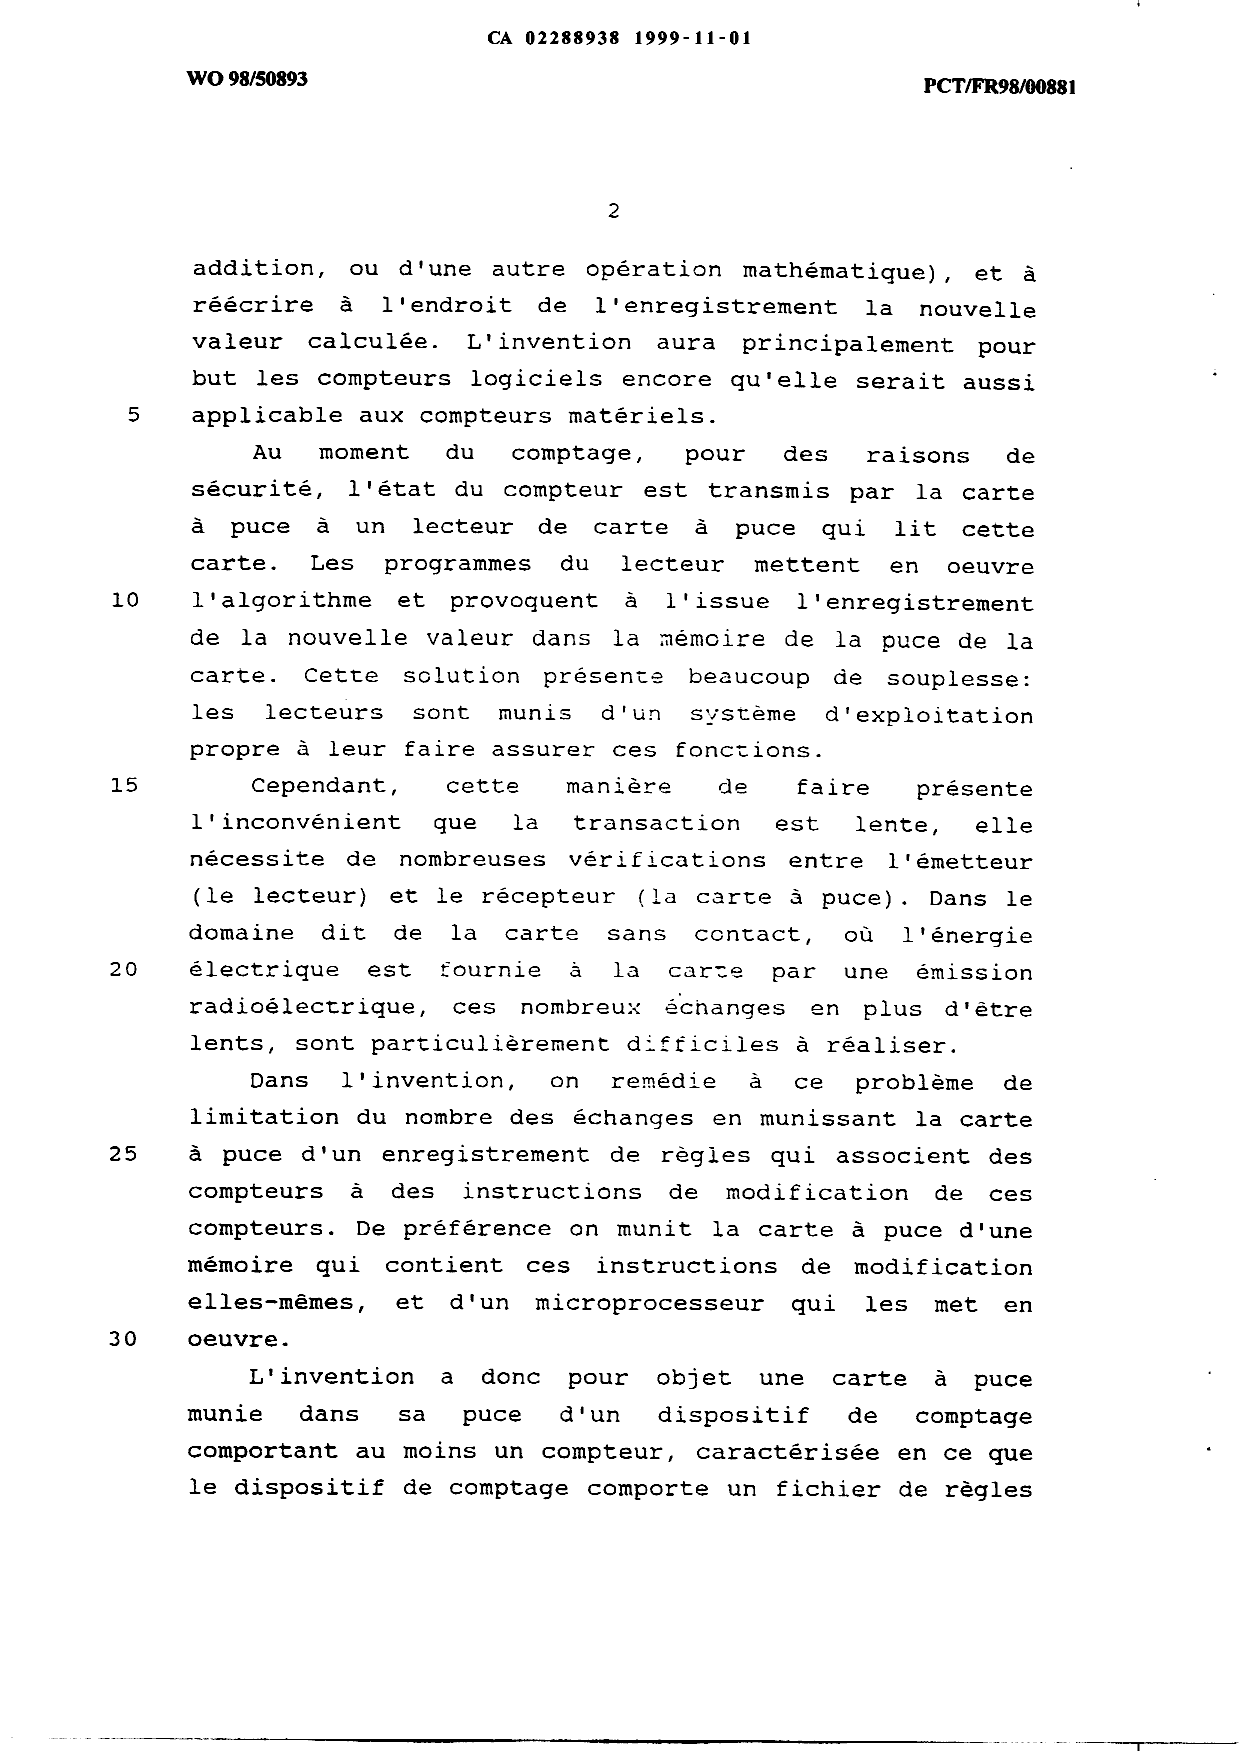 Canadian Patent Document 2288938. Description 19991101. Image 2 of 17